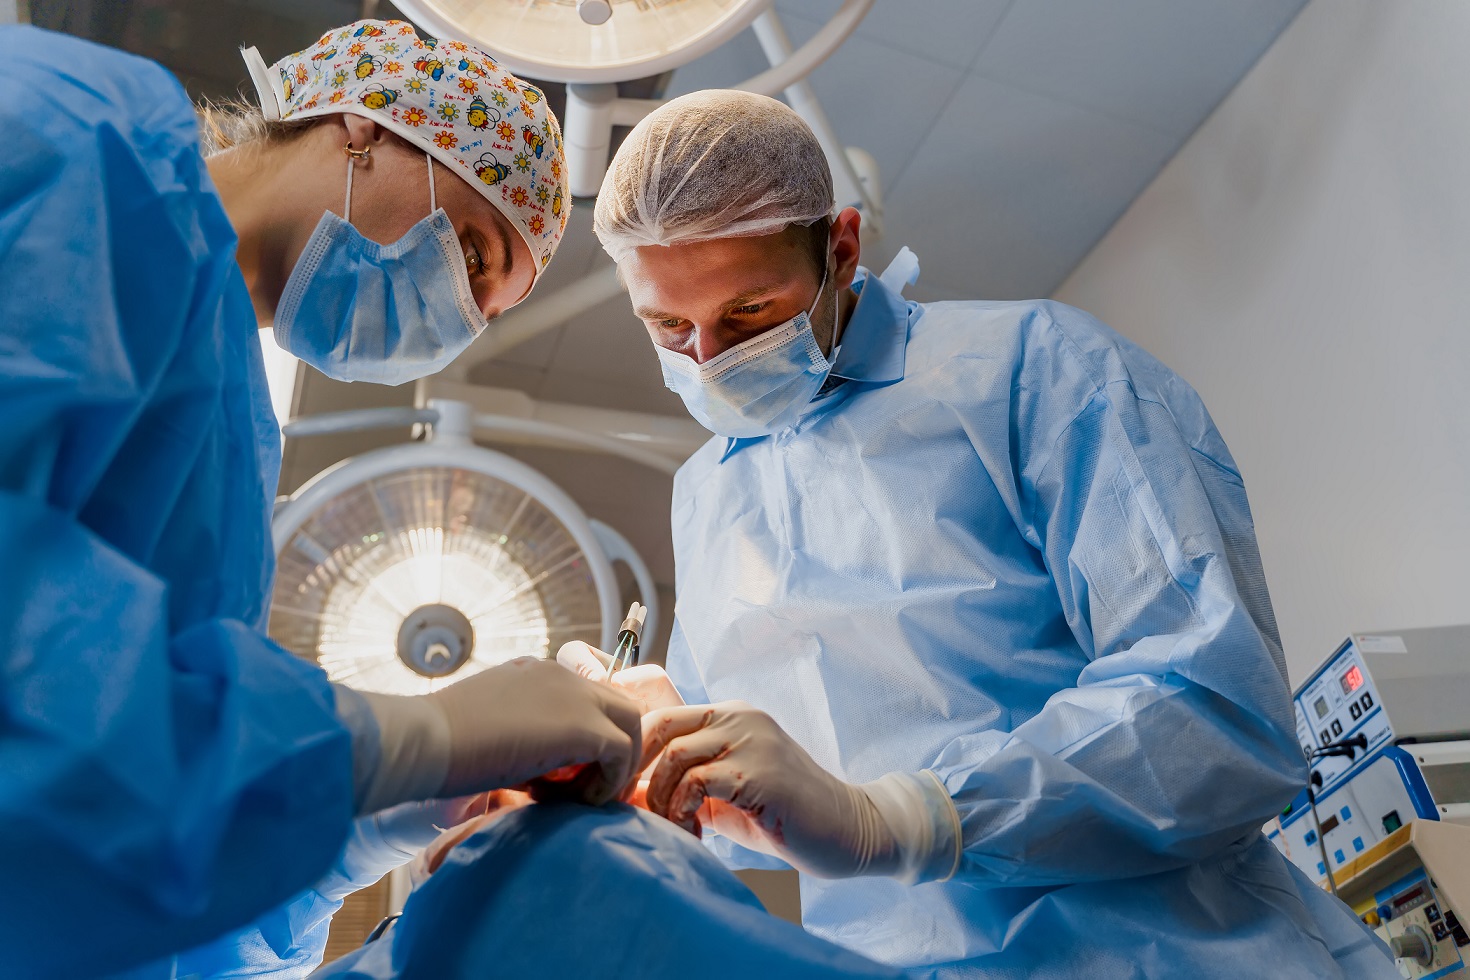 Deux médecins pratiquent une opération de chirurgie plastique du visage d’un patient